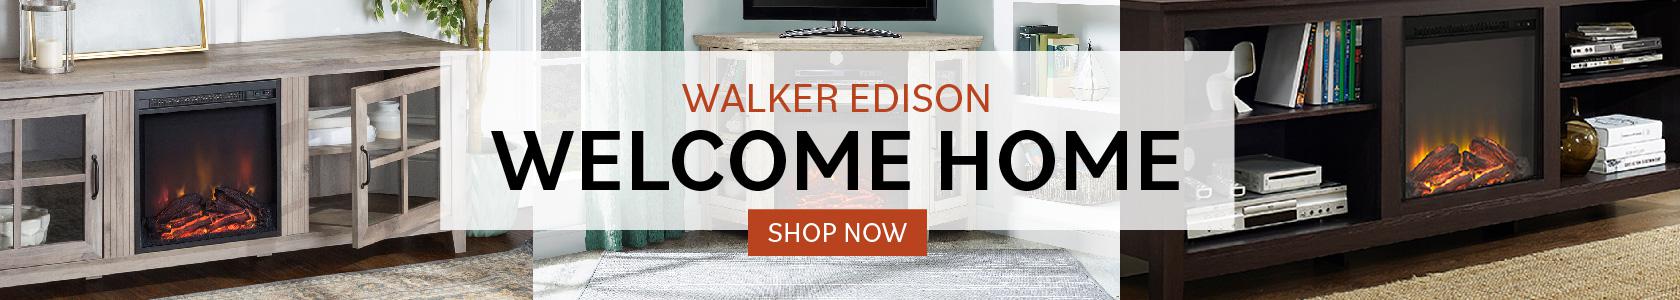 Walker Edison banner